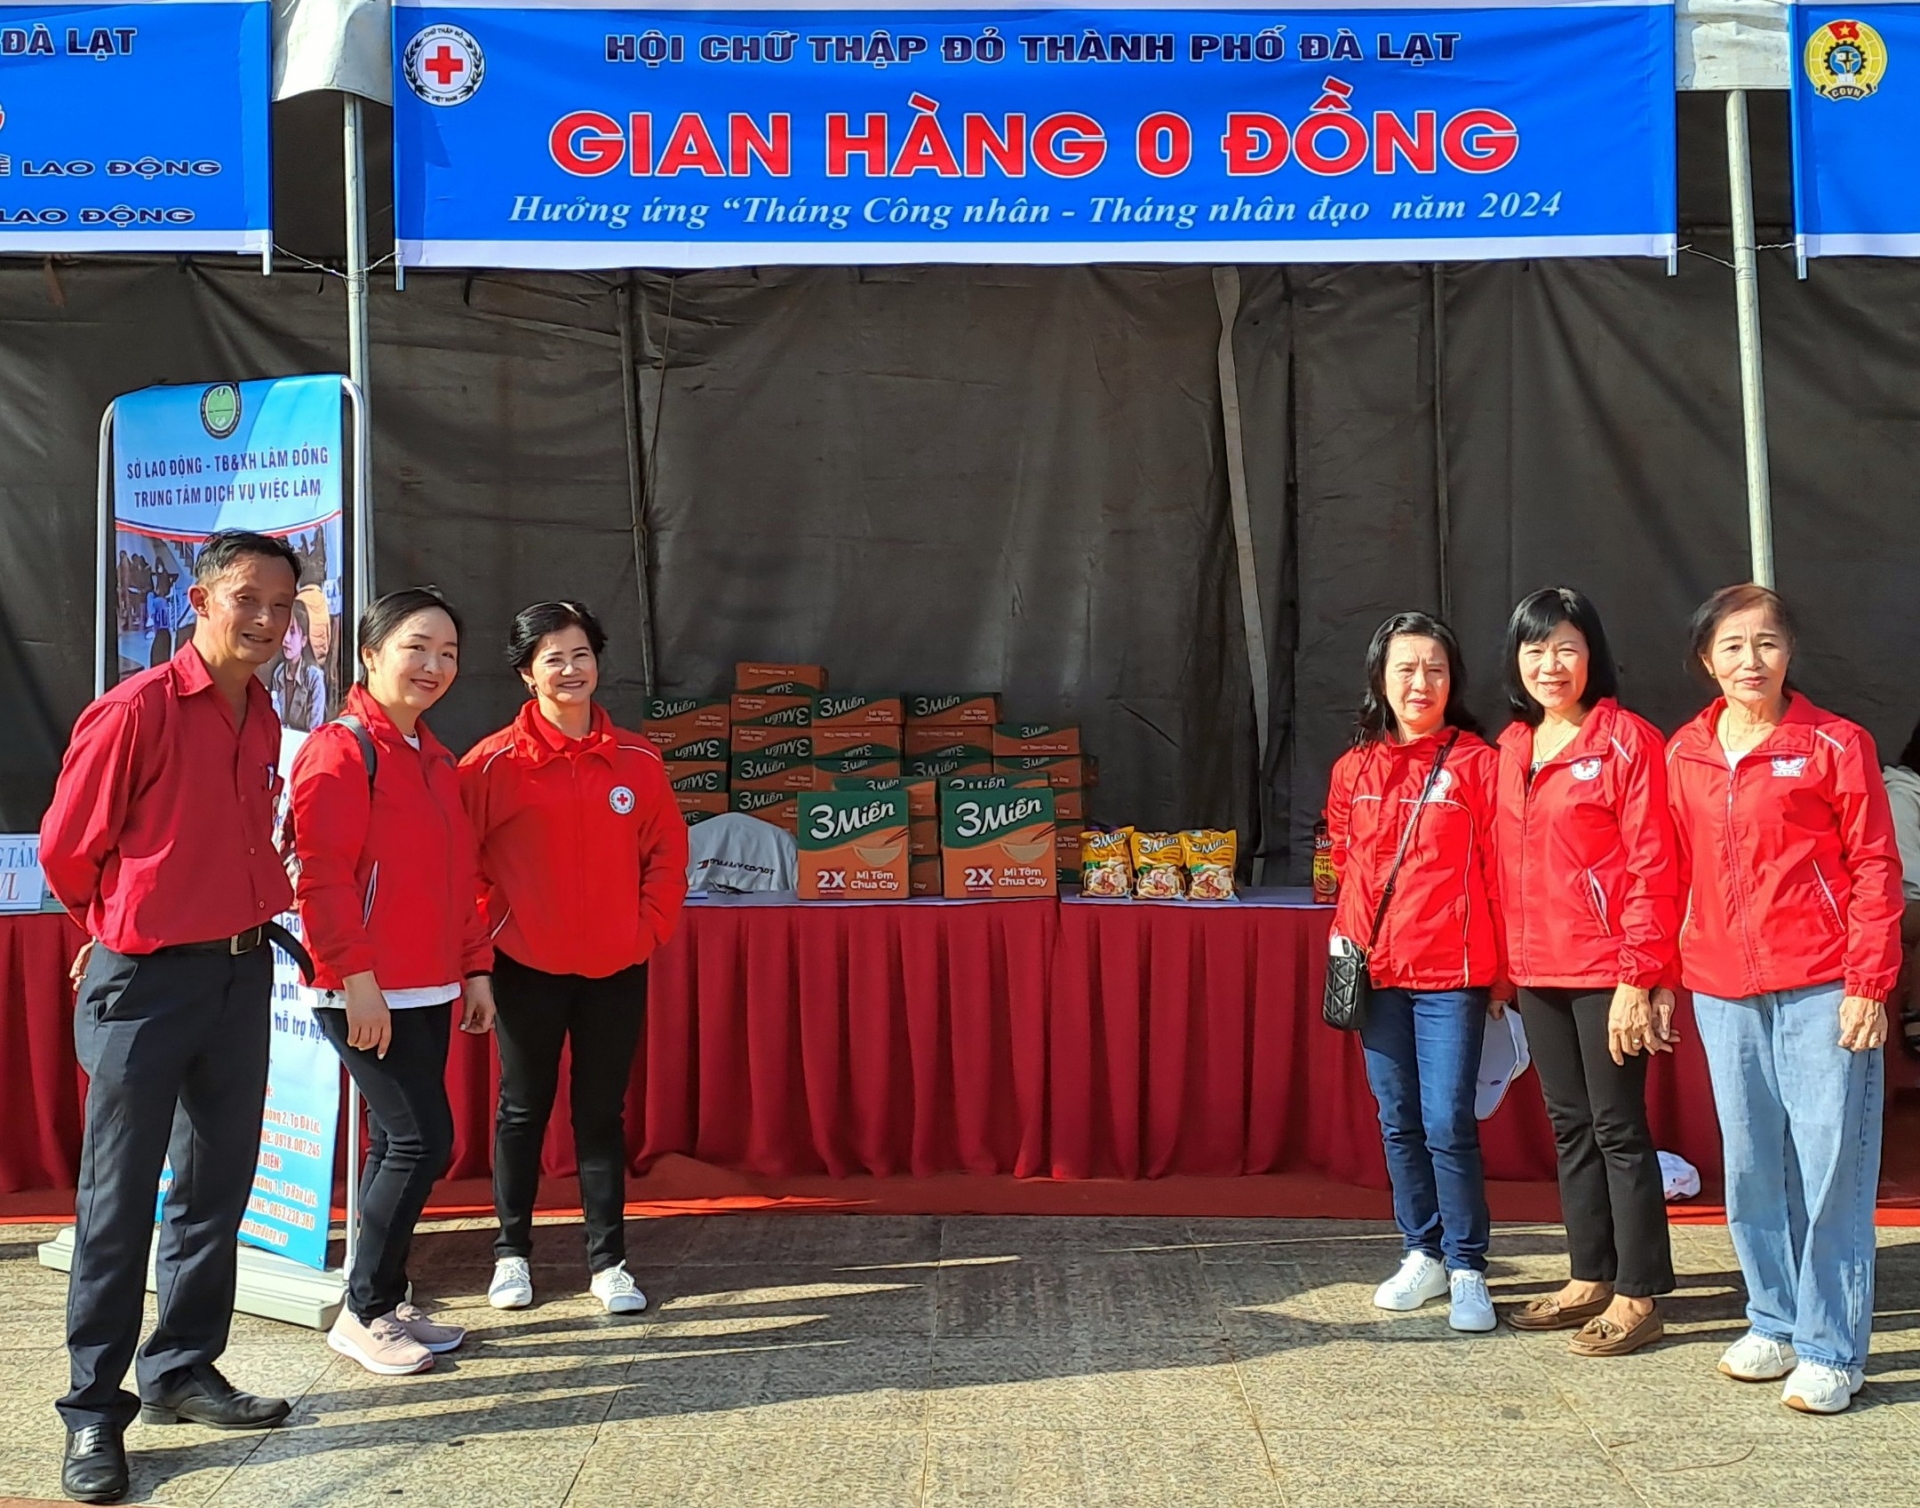 Hội CTĐ Đà Lạt phối hợp với Liên đoàn Lao động thành phố Đà Lạt tổ chức một gian hàng 0 đồng với 5 mặt hàng tặng 100 công nhân lao động khó khăn trị giá 15 triệu đồng

